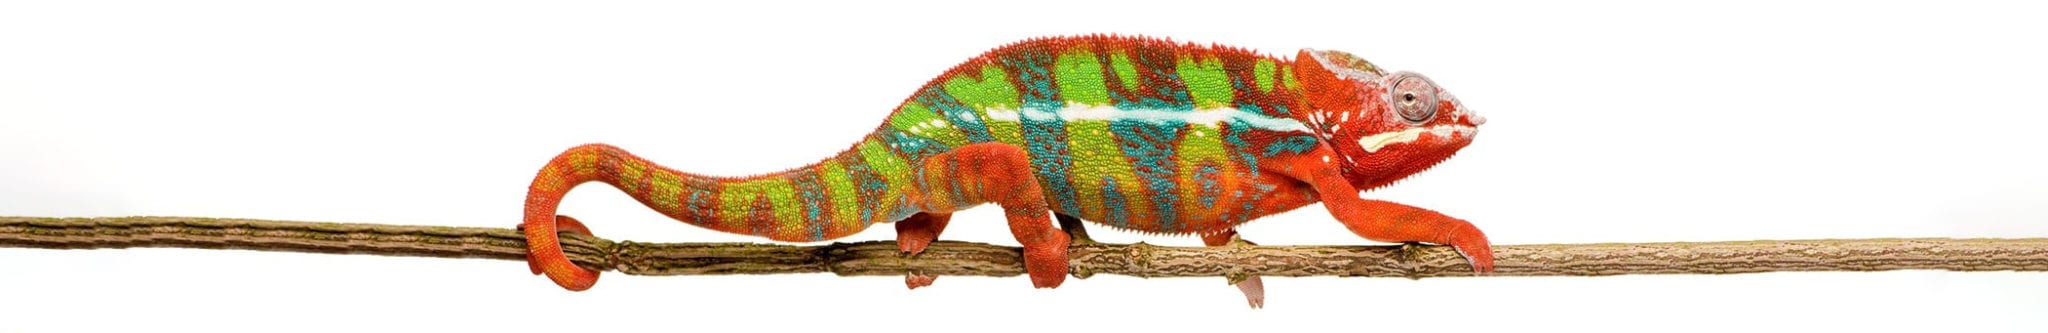 chameleon-on-branch